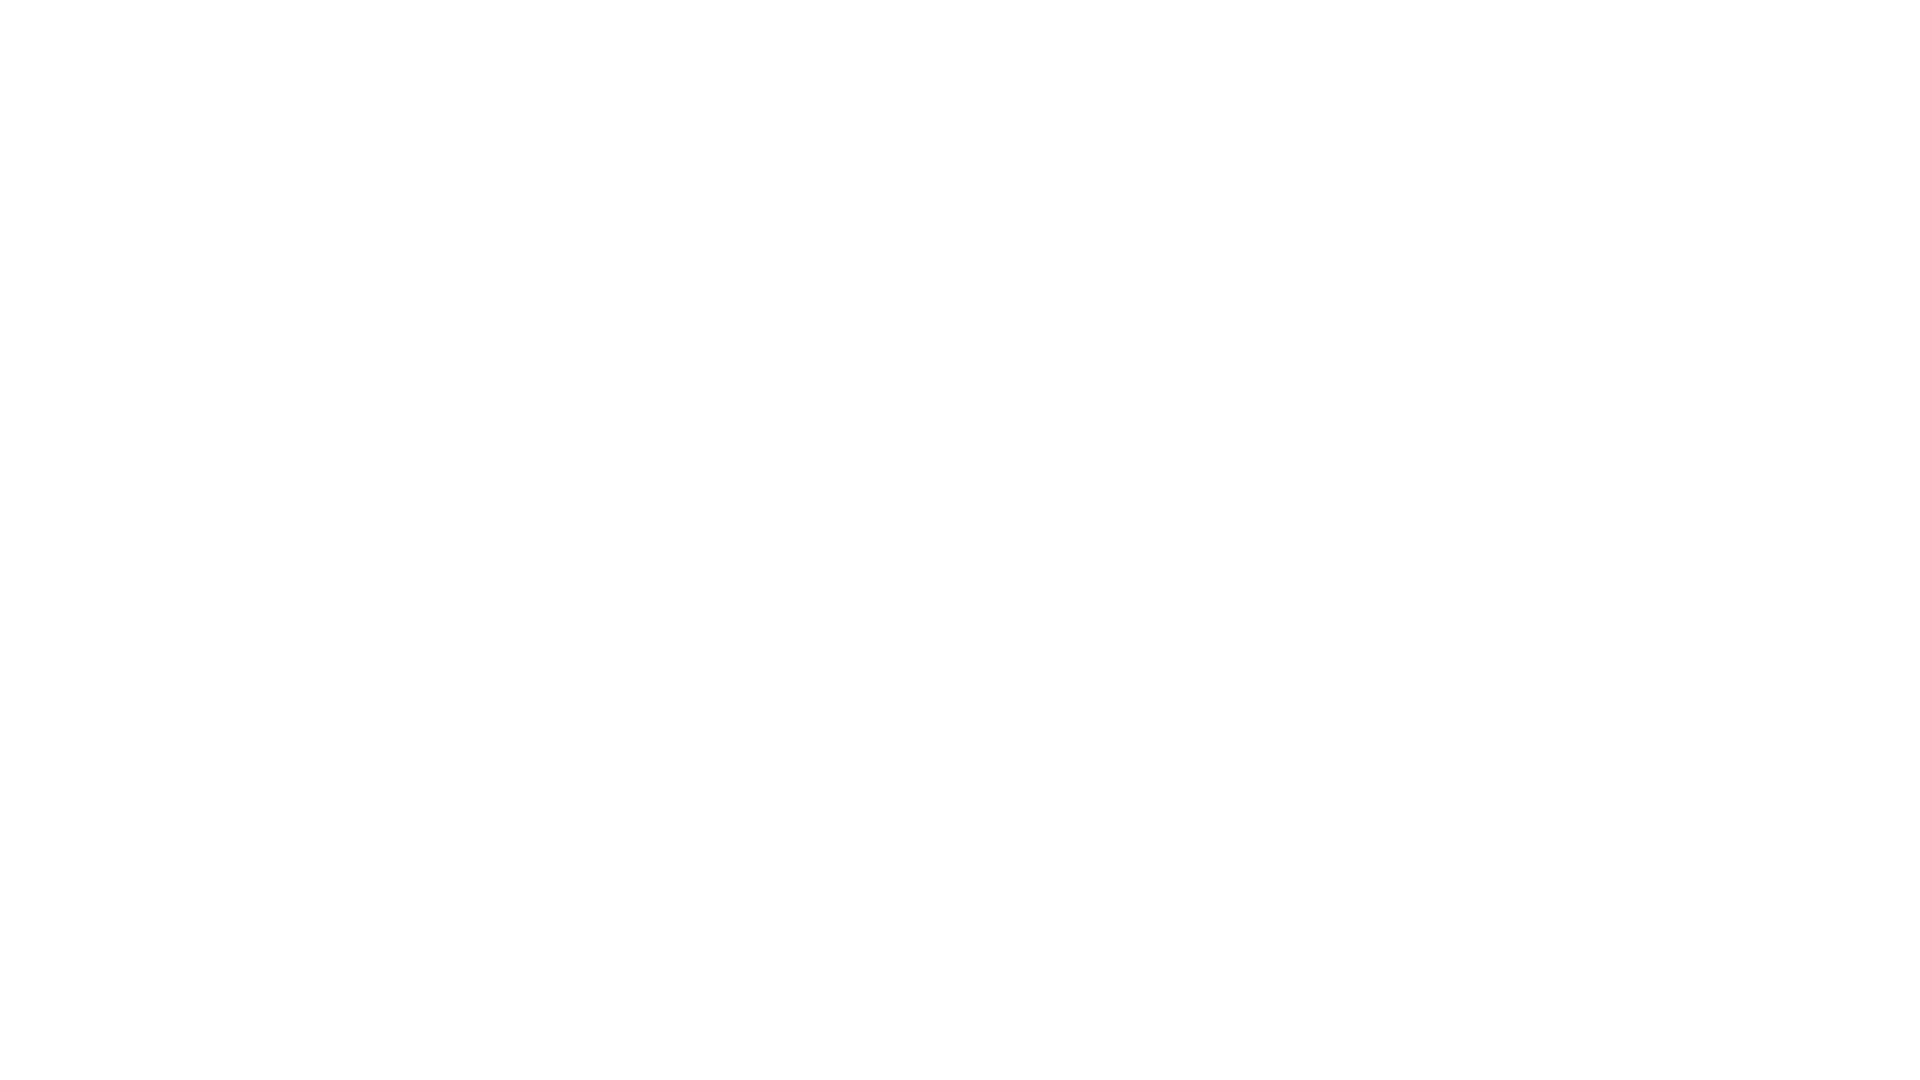 Hexa 925